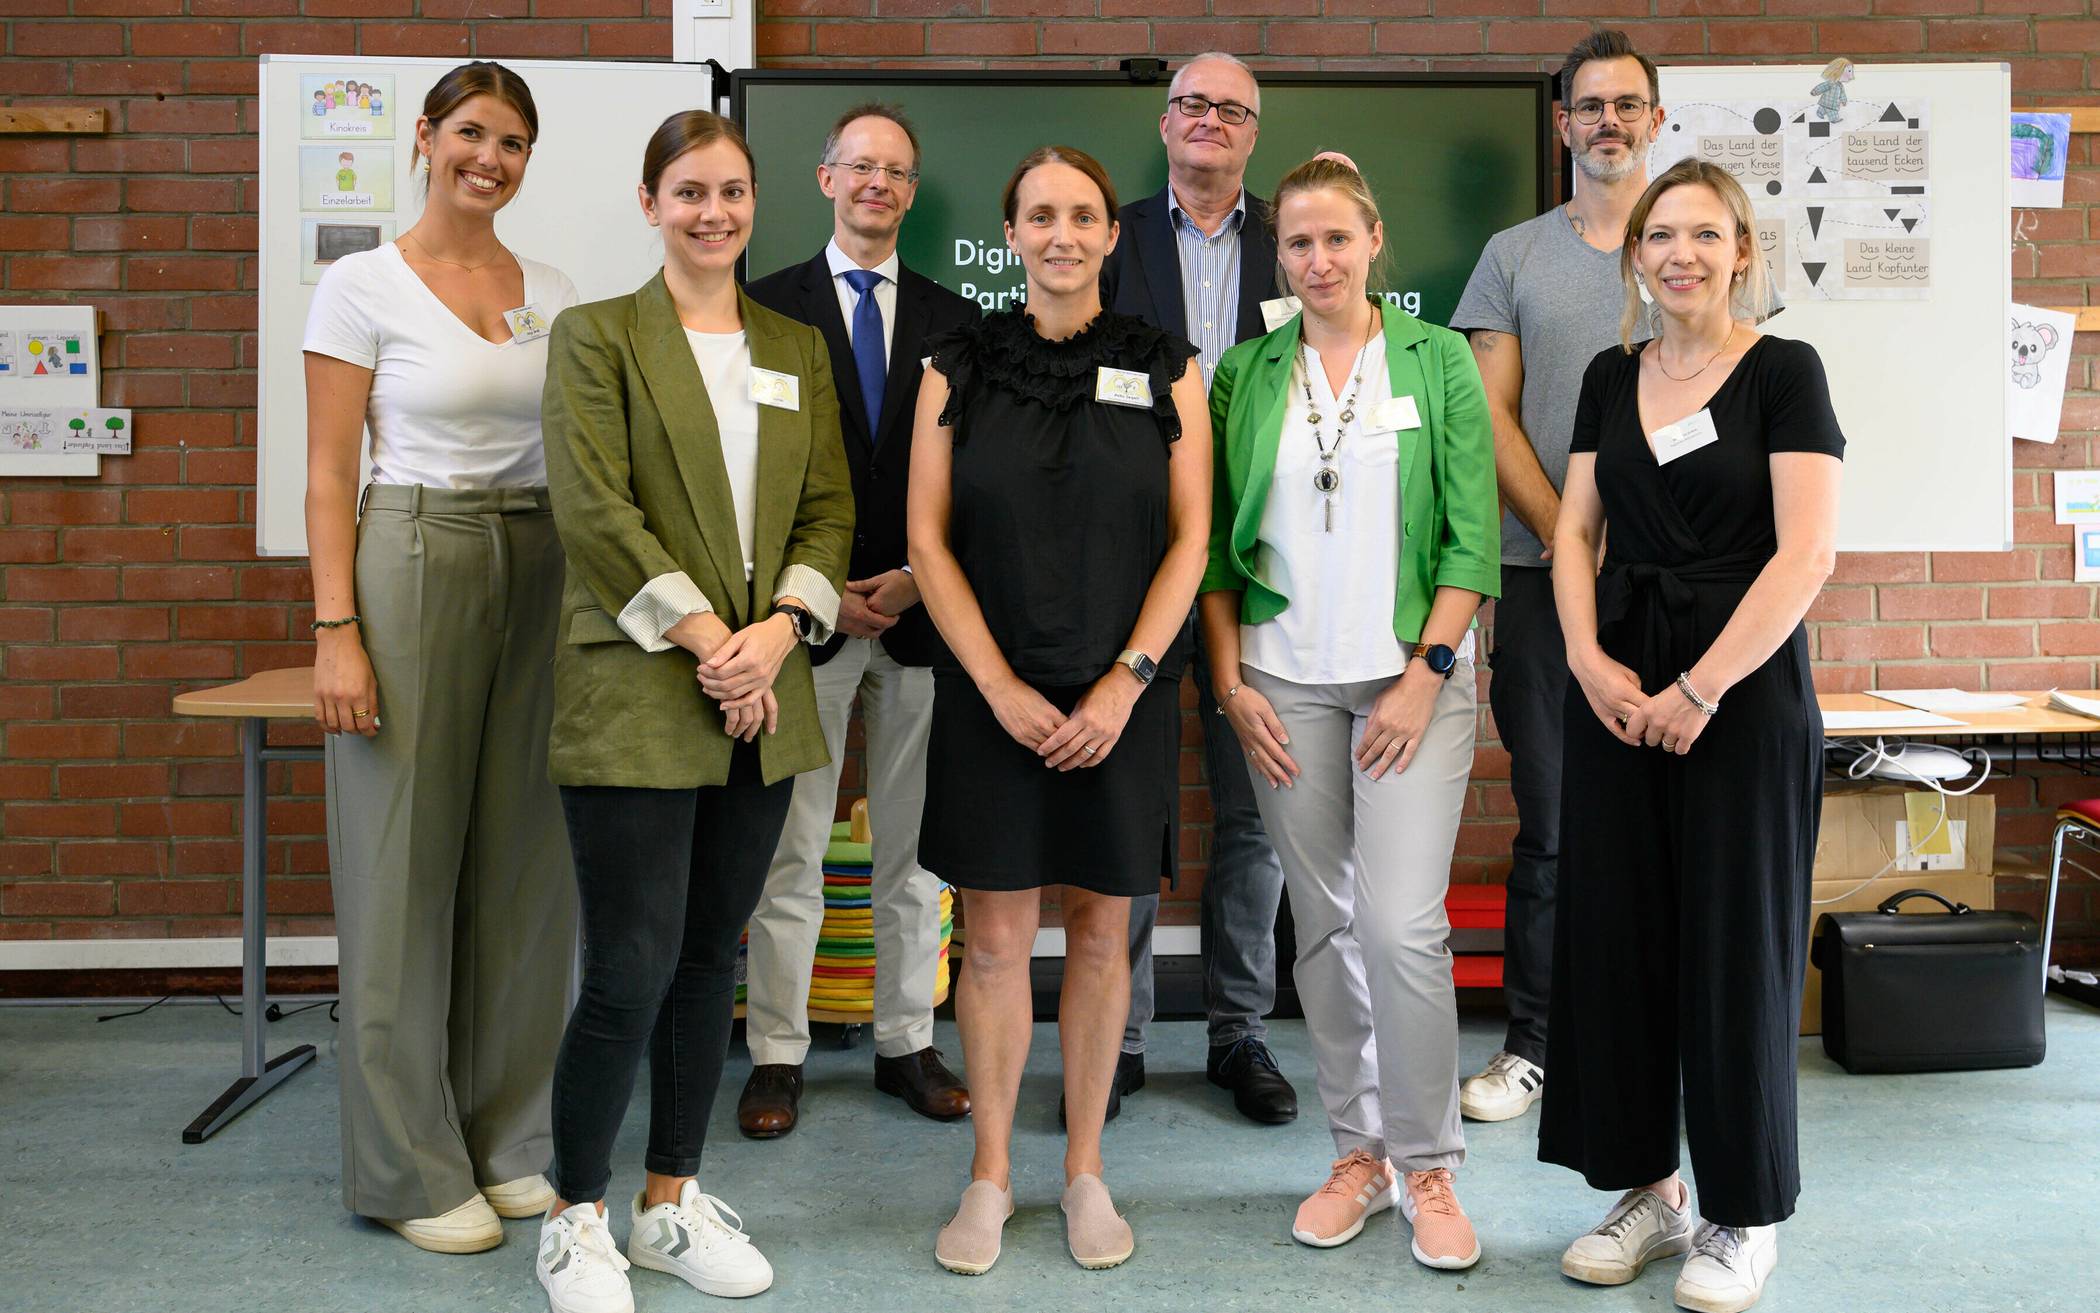  Der Mini-Fachtag wurde vom Regionalen Bildungsbüro des Rhein-Kreises Neuss organisiert und fand in der Katholischen Grundschule Kaarst statt. 